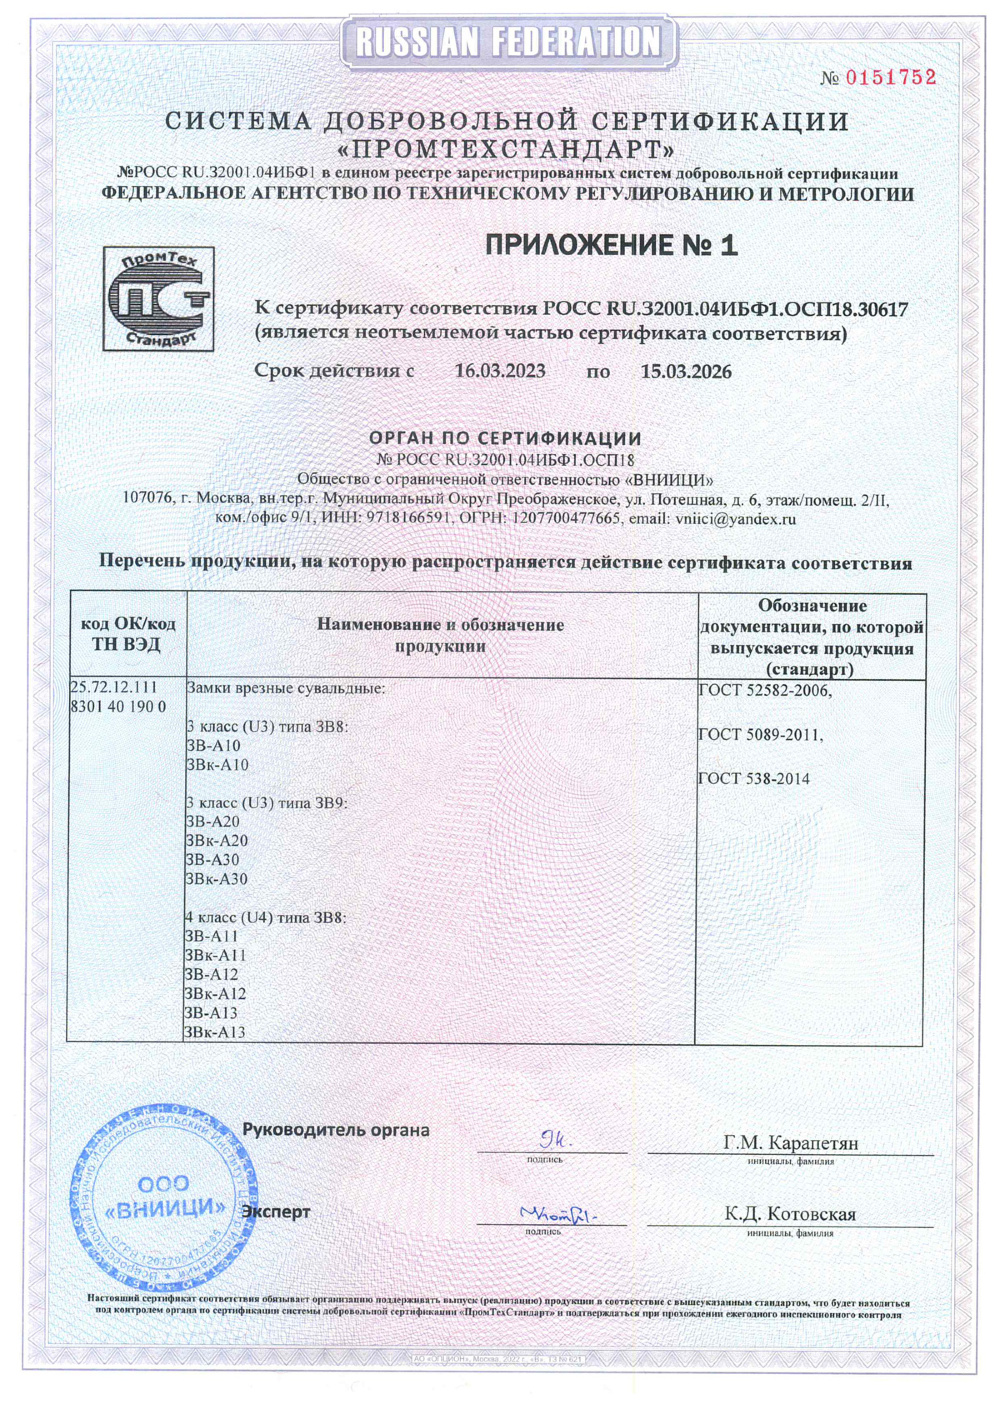 сертификат соответствия для замка А15 стр2